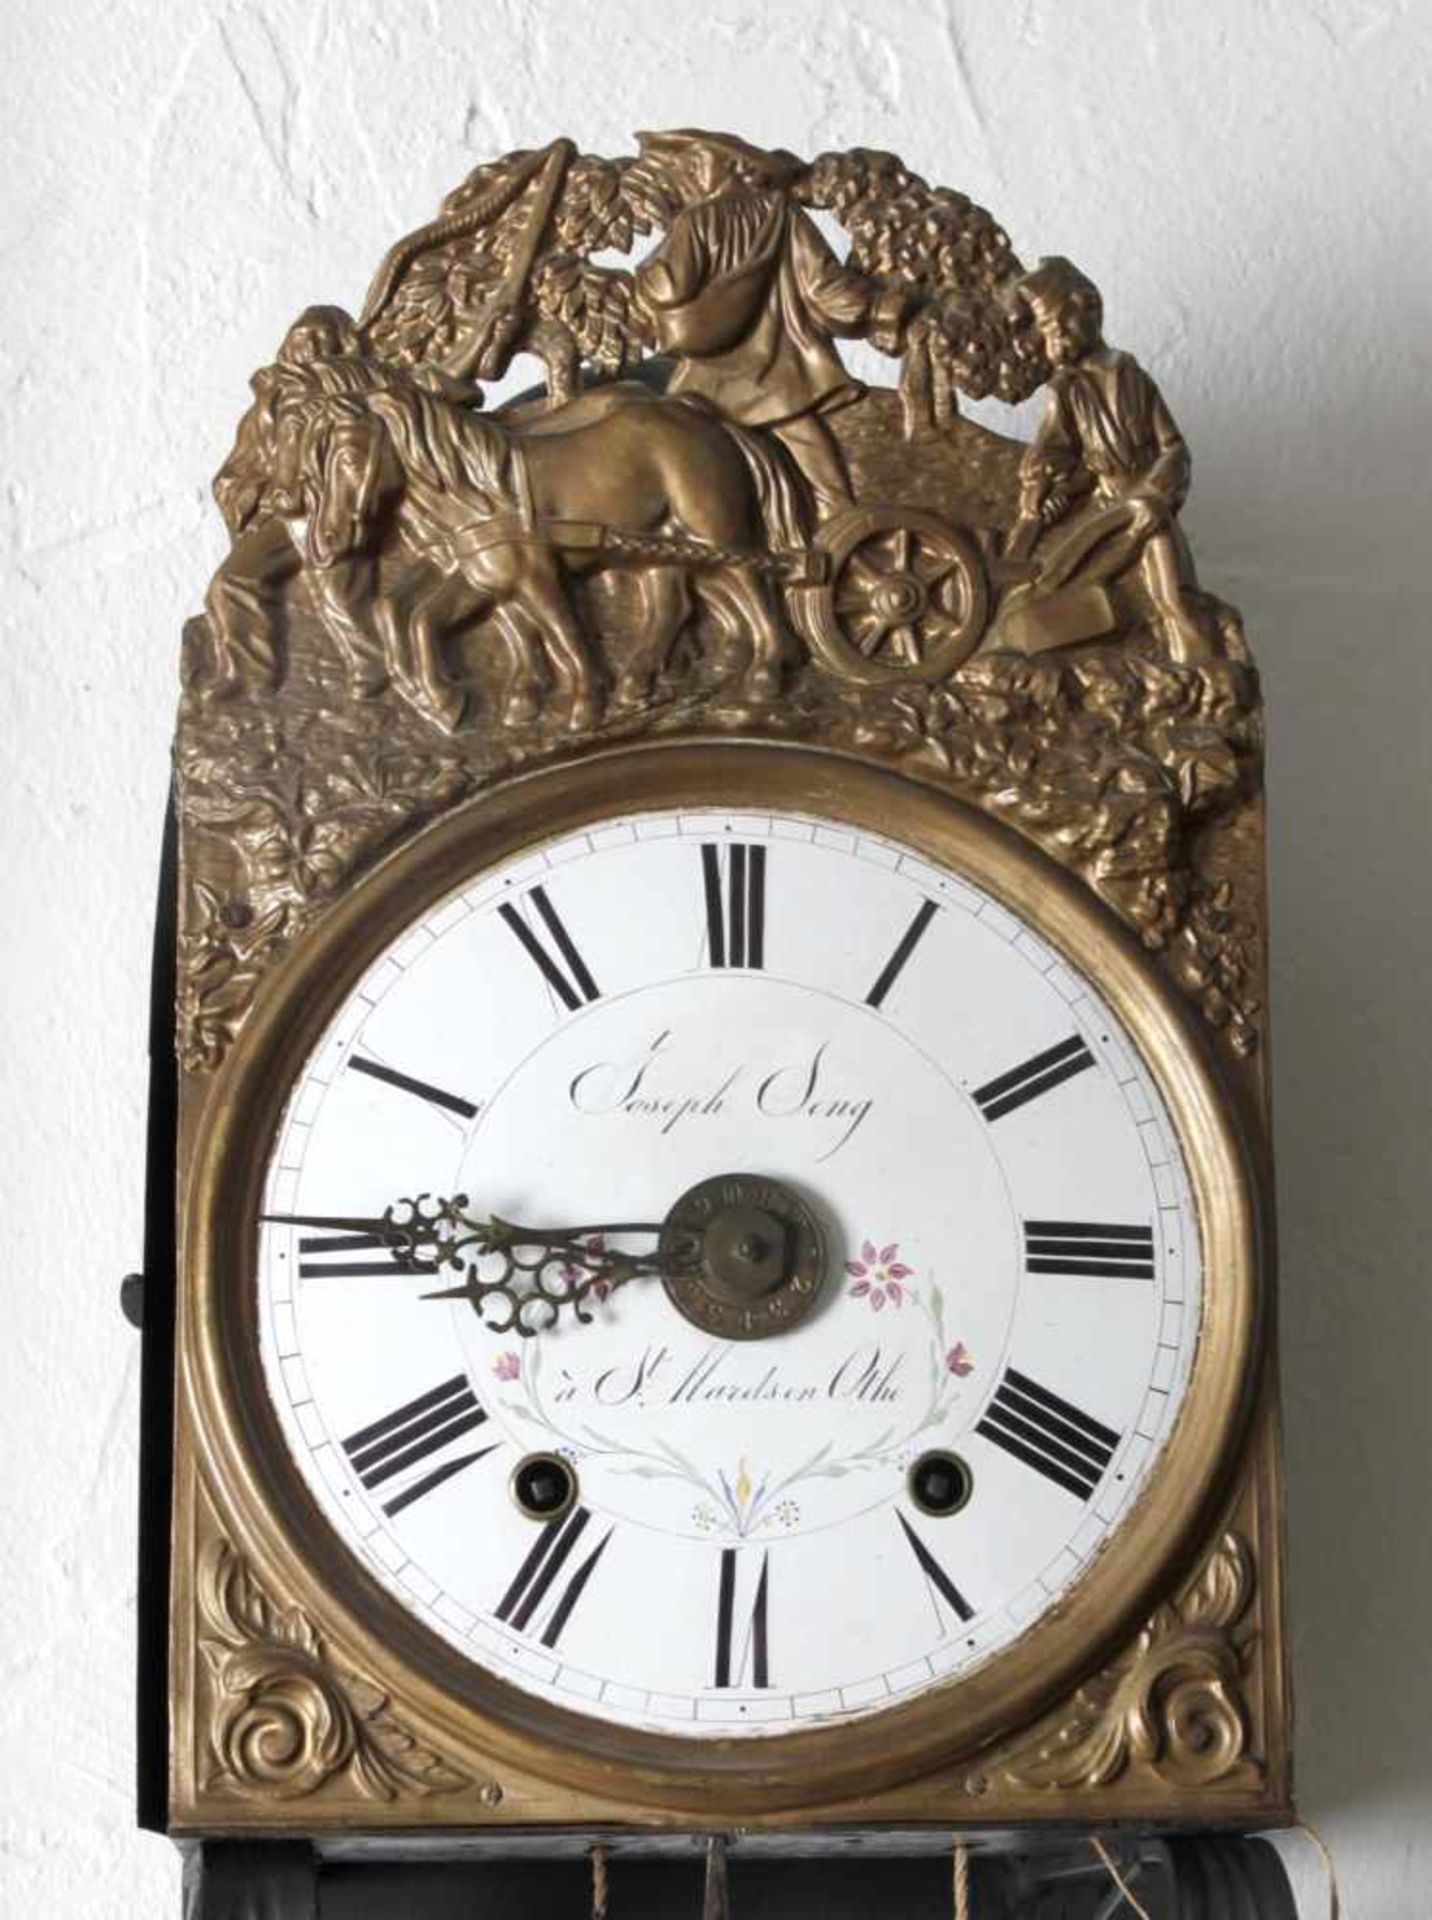 Comtoise-Uhr mit großem Pendel (Scheinkompensationspendel), Frankreich, um 1840-60 - Bild 2 aus 2